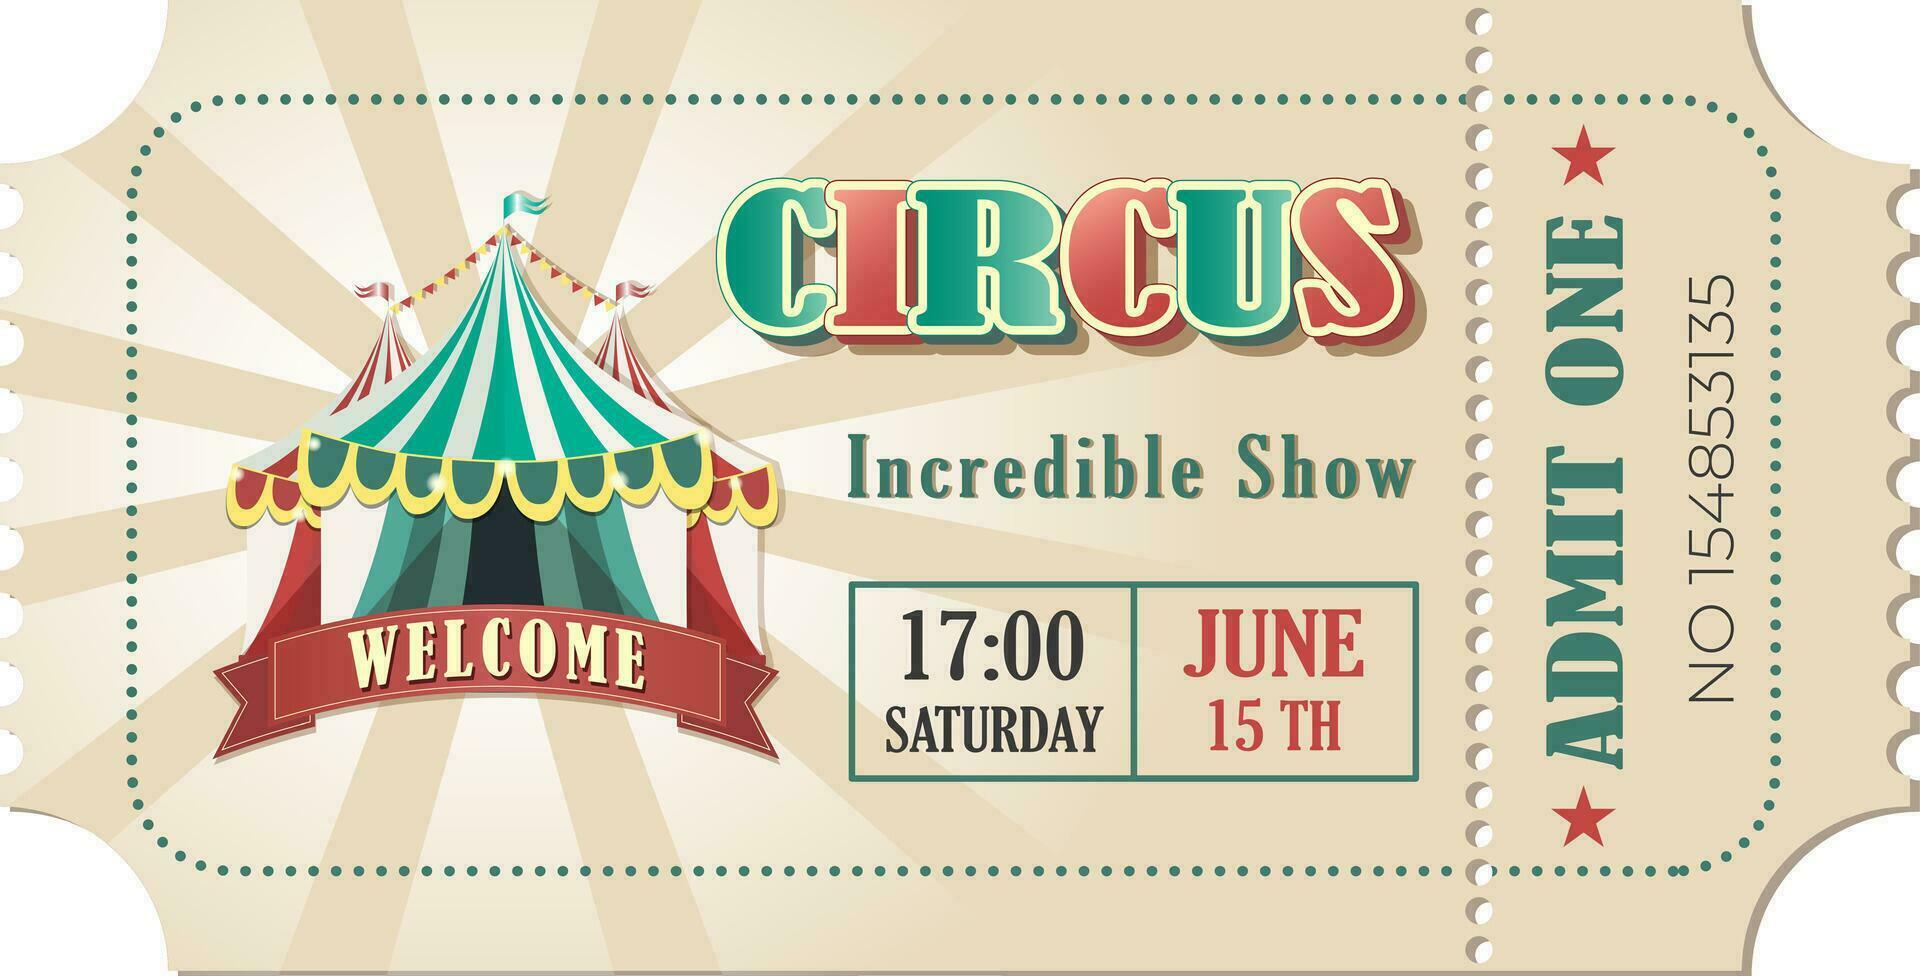 wijnoogst circus ticket. vector ontwerp circus ticket, met groot bovenkant, toegeven een, code en tekst elementen voor kunsten festival en evenementen.